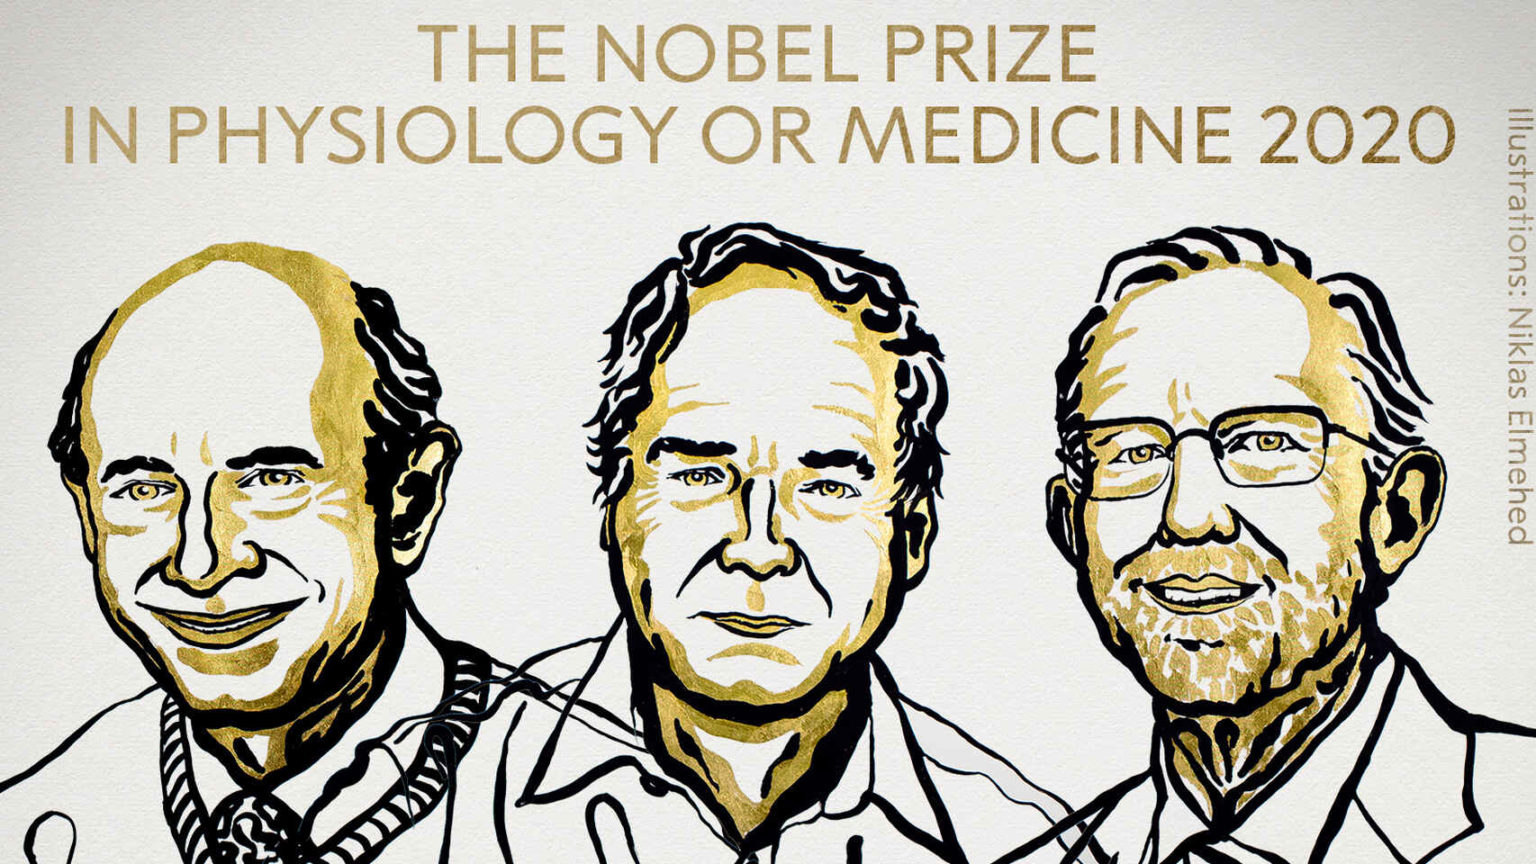 Los descubridores del virus de la Hepatitis C, Premio Nobel de Medicina 2020